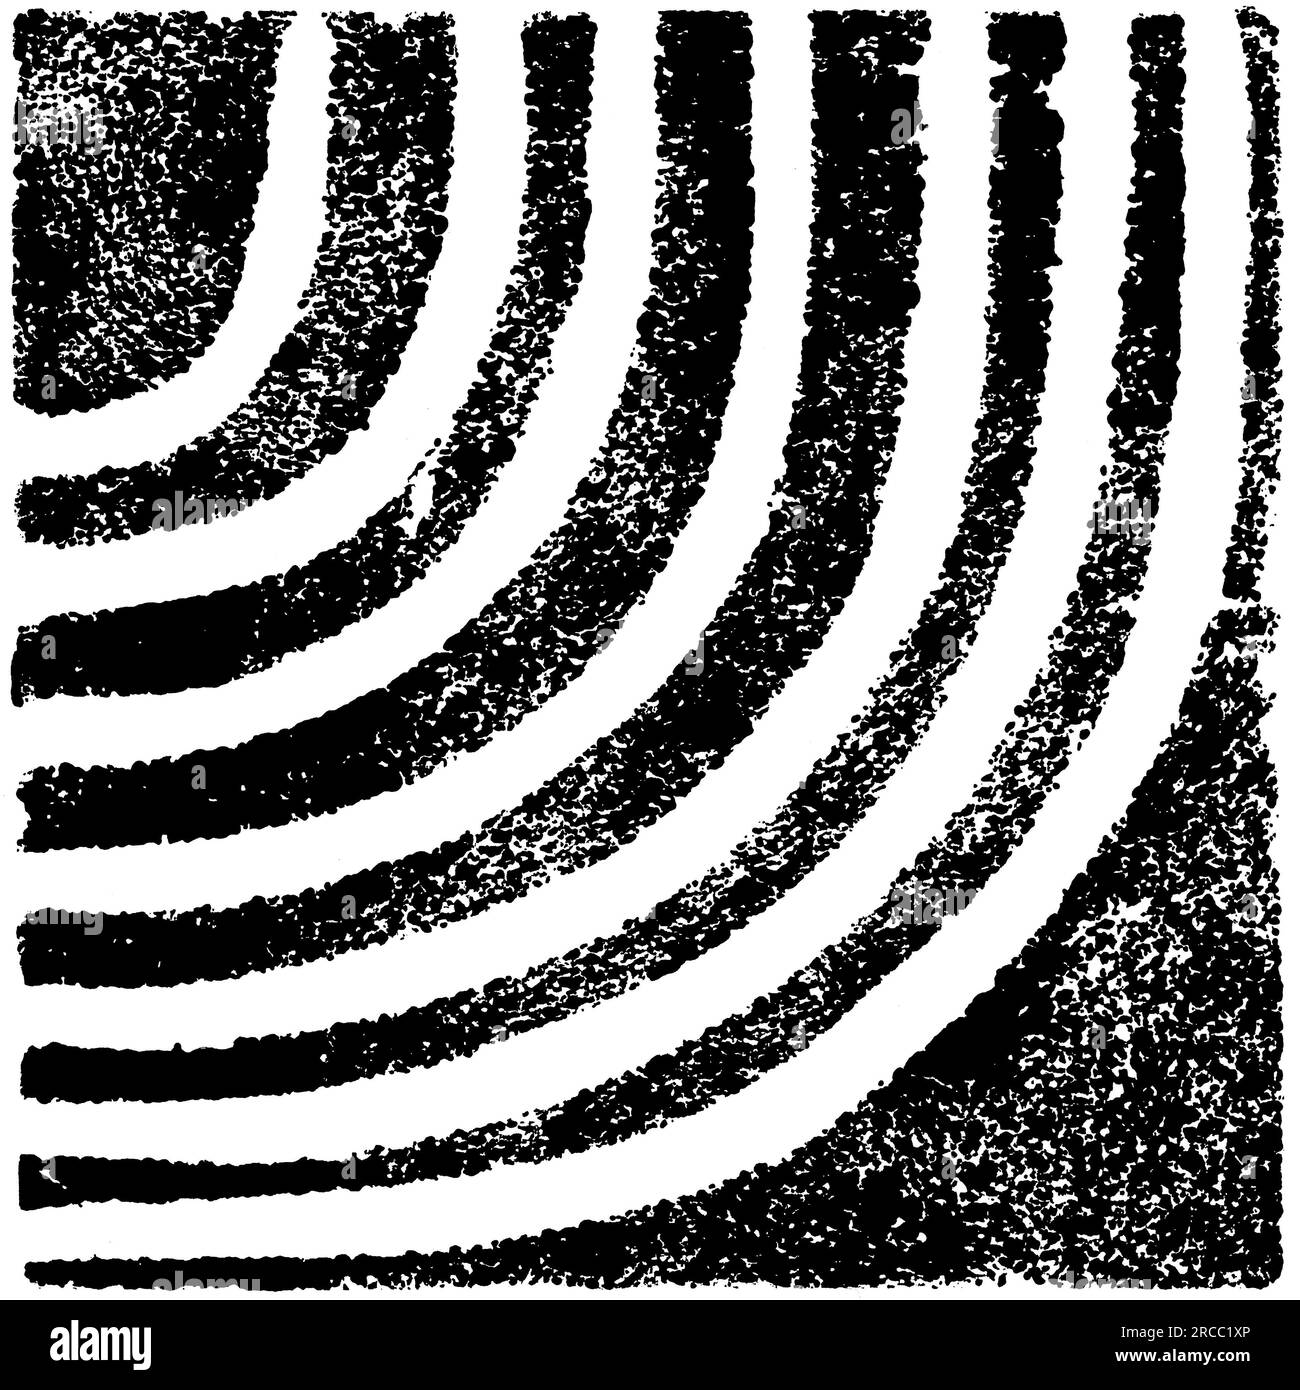 Sello de textura original hecho a mano con líneas curvas en blanco y negro Foto de stock